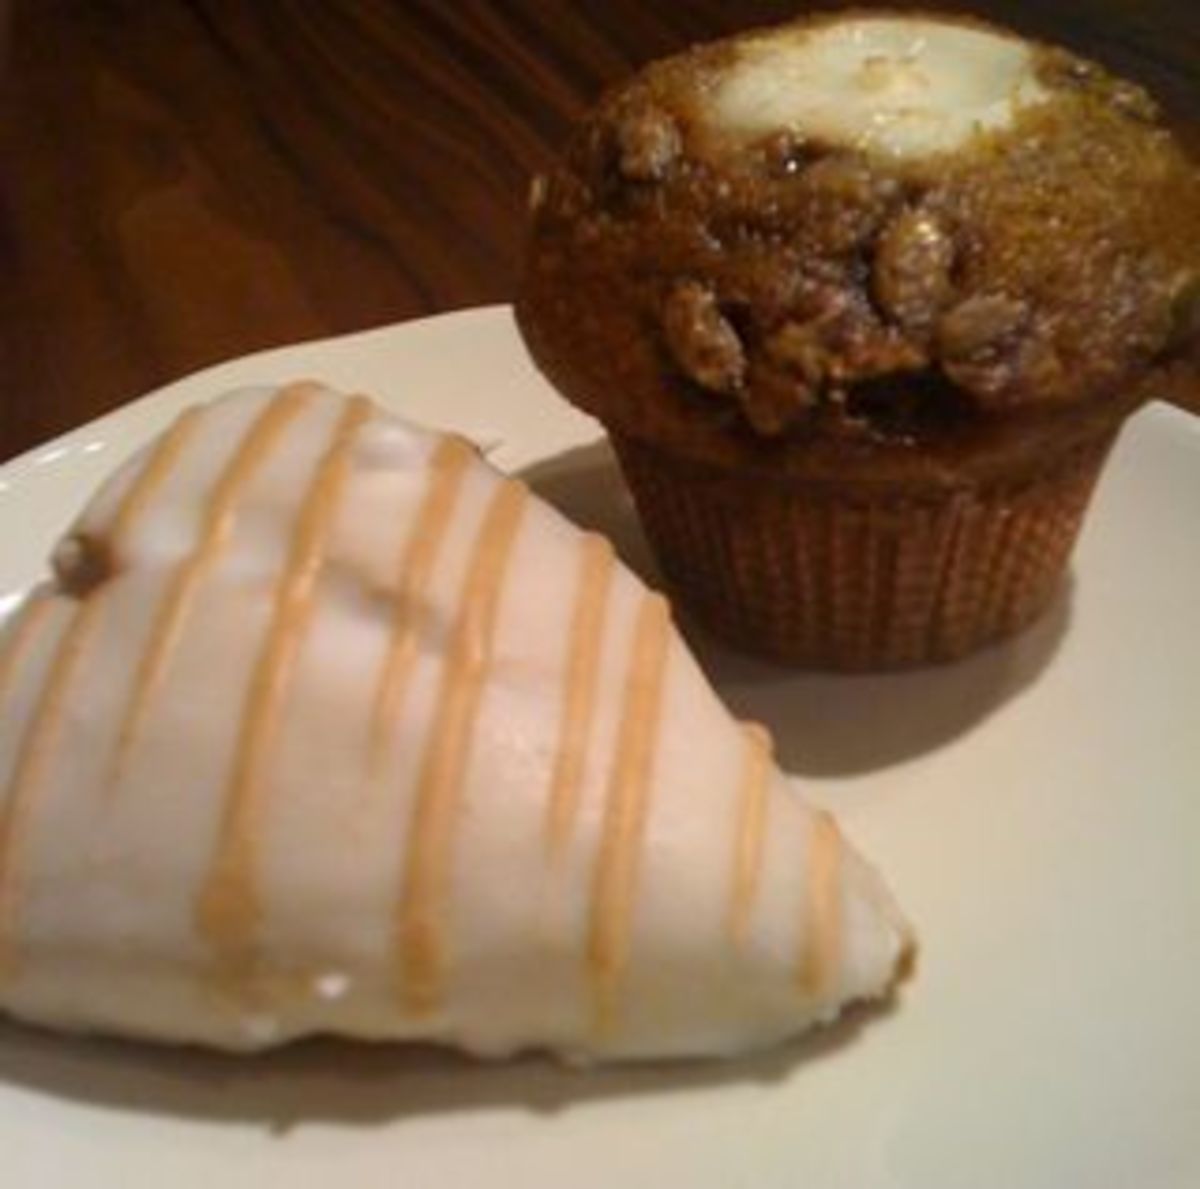 Here is a pumpkin scone and a pumpkin cream cheese muffin.